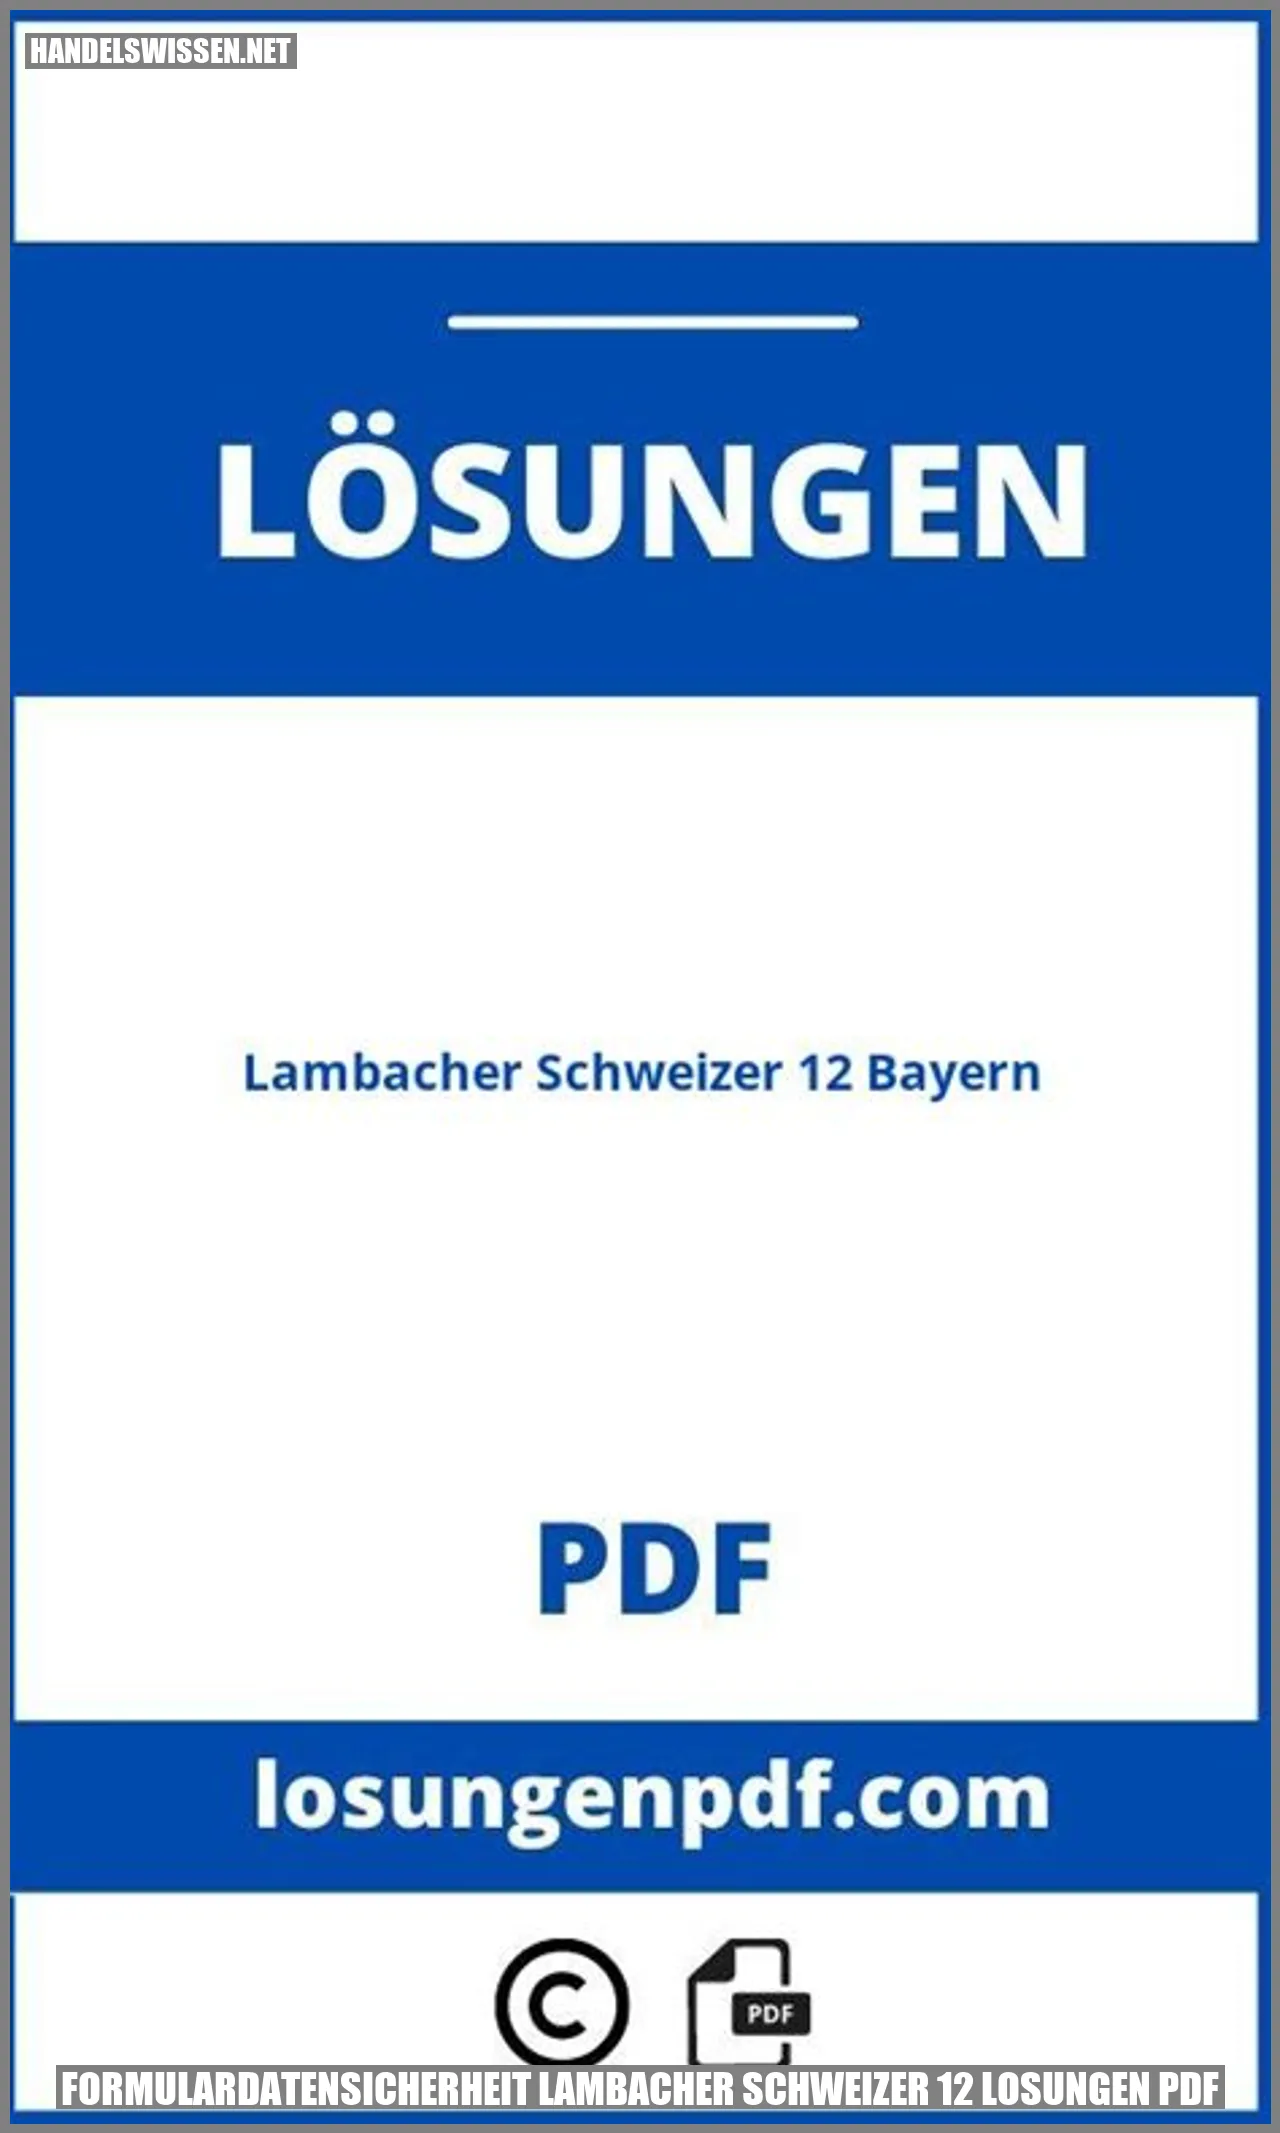 Formulardatensicherheit Lambacher Schweizer 12 Lösungen PDF